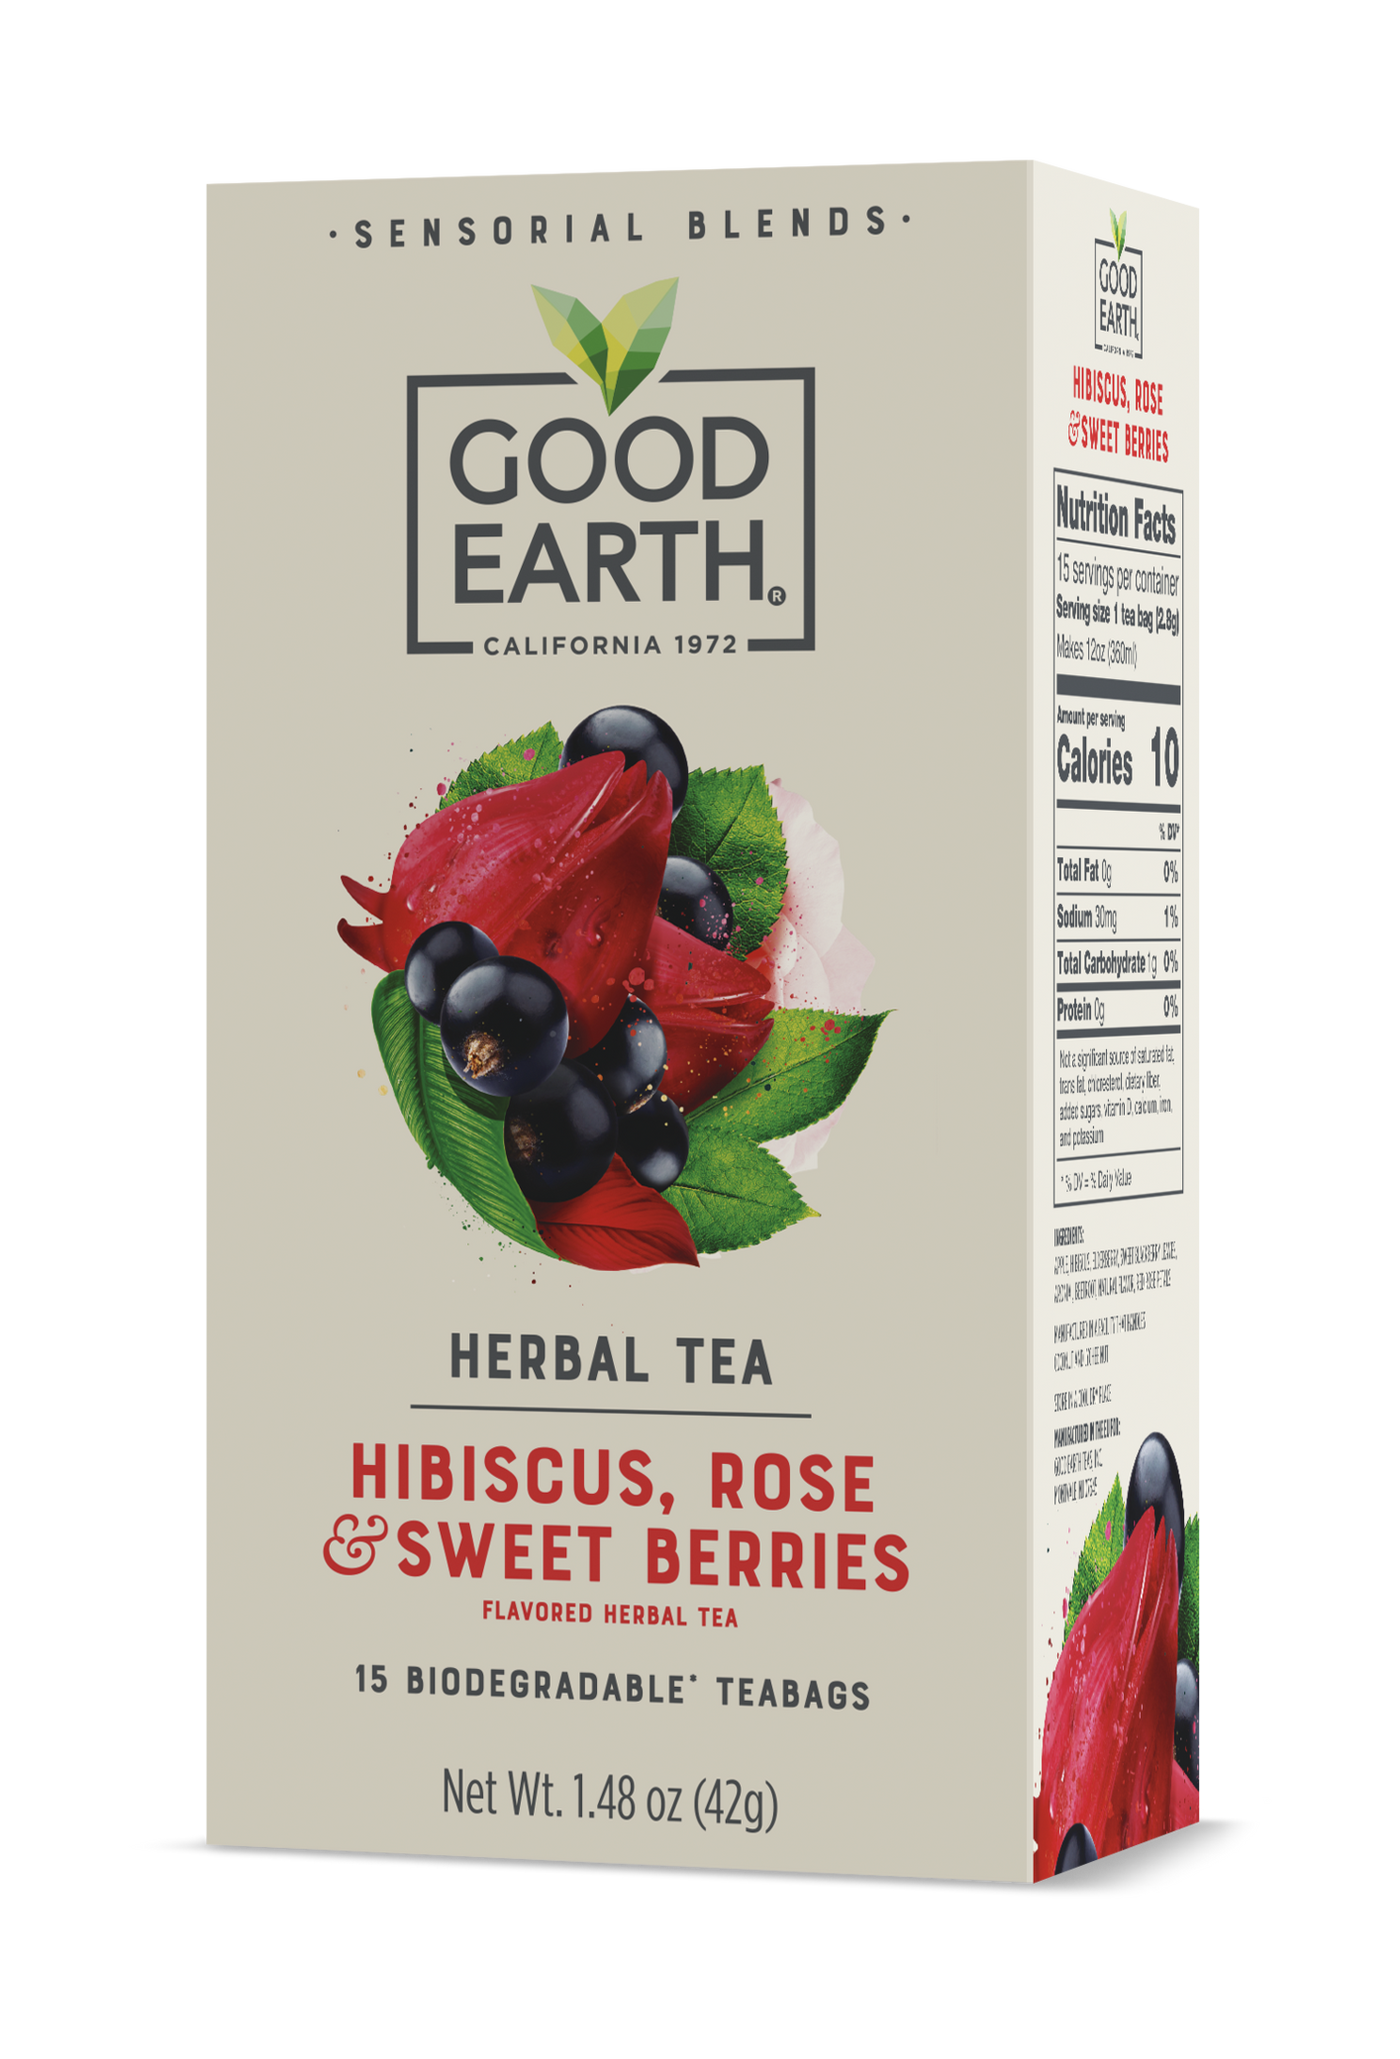 Hibiscus, Rose & Sweet Berries packaging